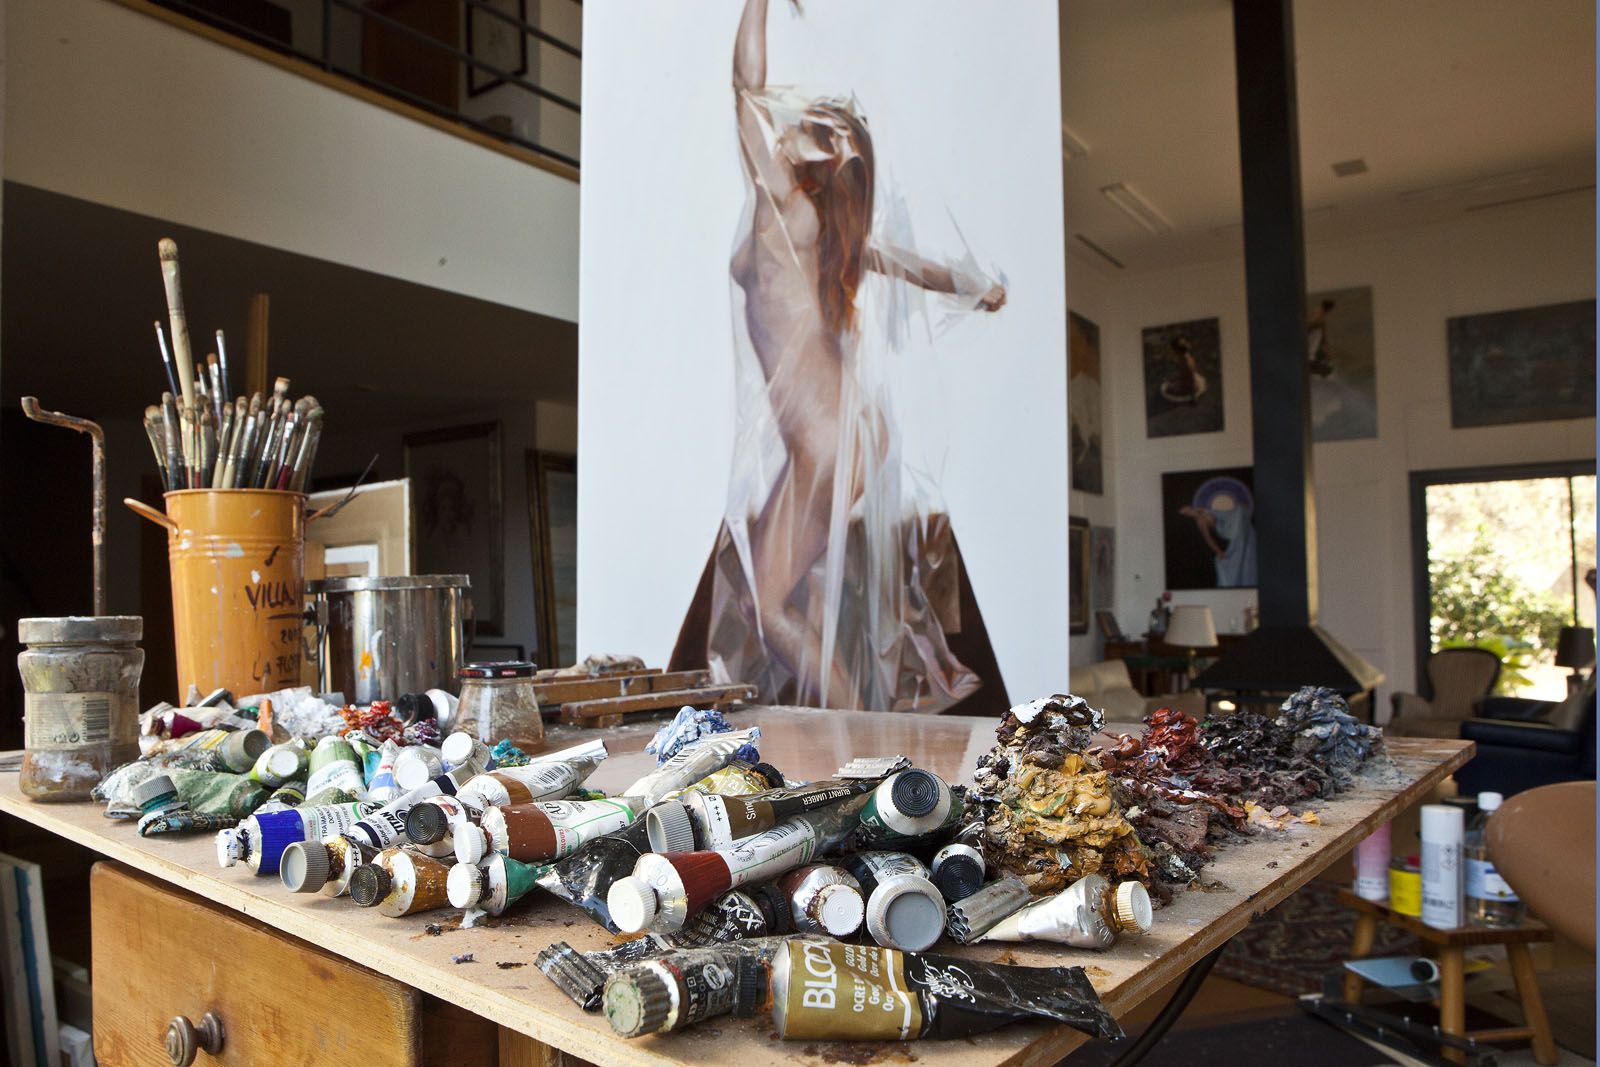 Actualment treballa amb la col·lecció de dones envoltades de plàstic  FOTO: Artur Ribera